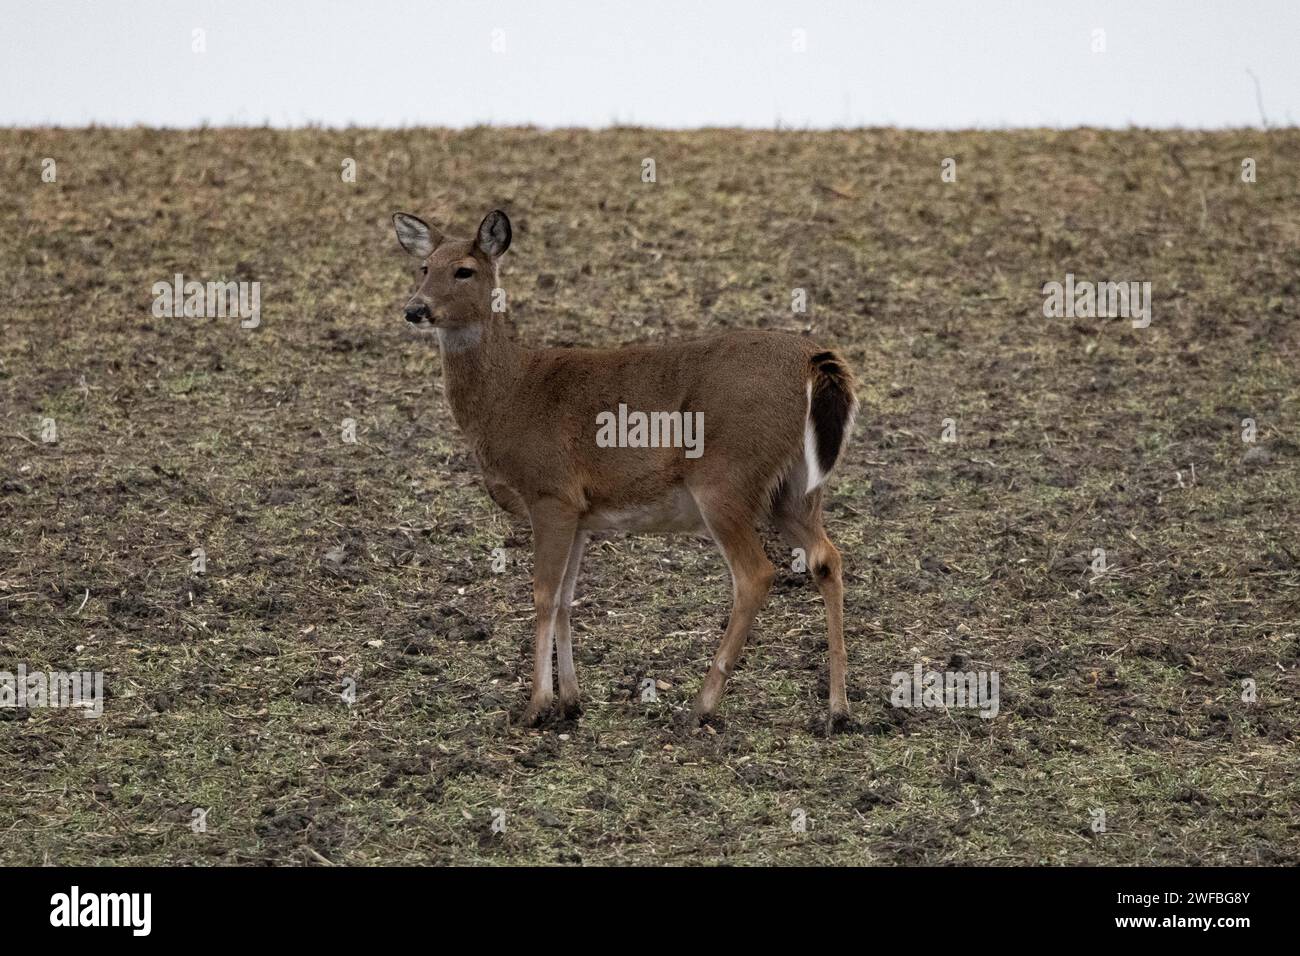 Ein Hirsch blickt direkt auf die Kamera, während er auf einem riesigen, grasbewachsenen Hügel positioniert ist Stockfoto